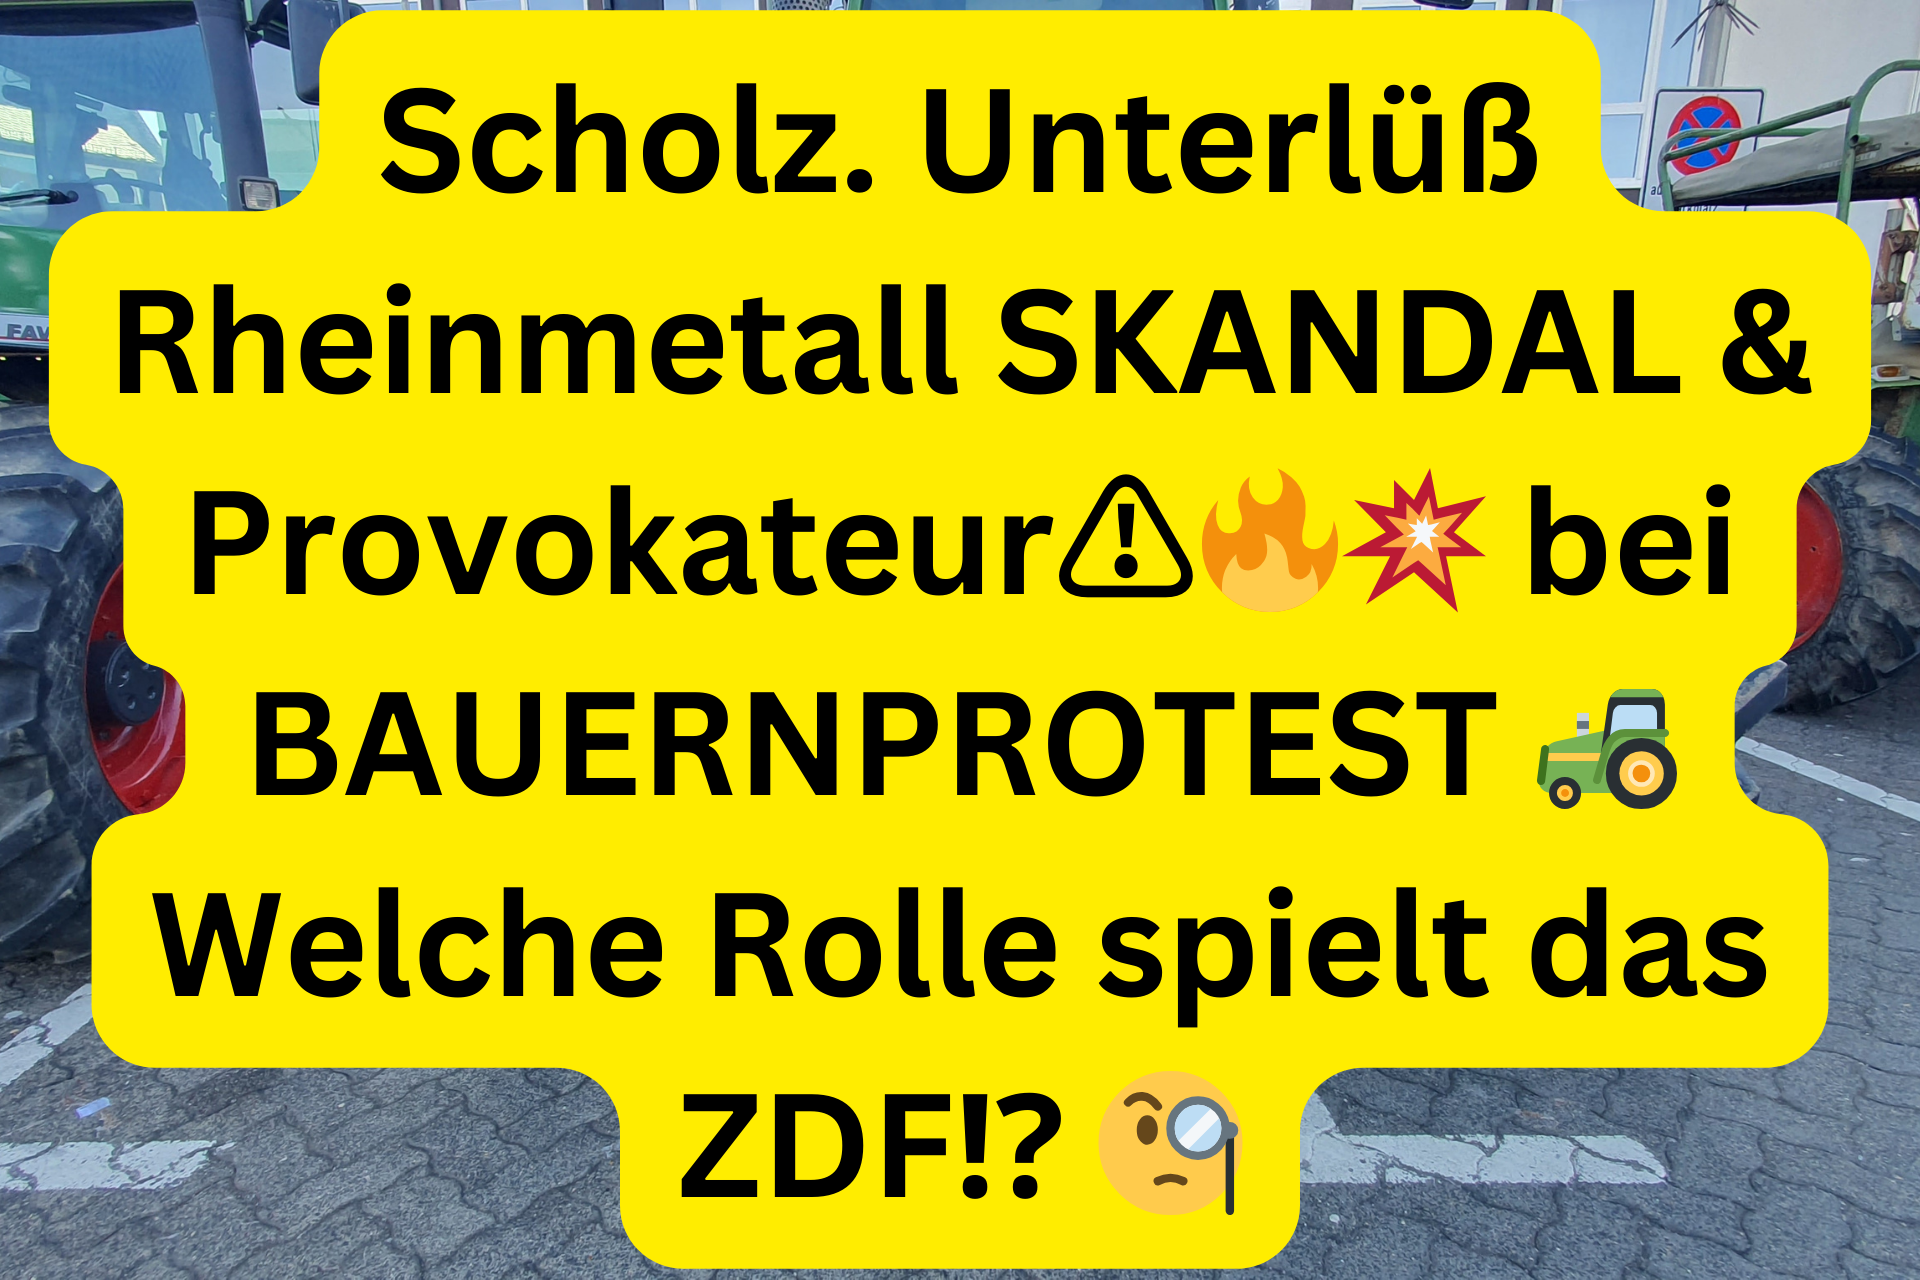 Scholz. Unterlüß Rheinmetall SKANDAL & Provokateur⚠️🔥💥 bei BAUERNPROTEST 🚜 Welche Rolle spielt das ZDF⁉️ 🧐